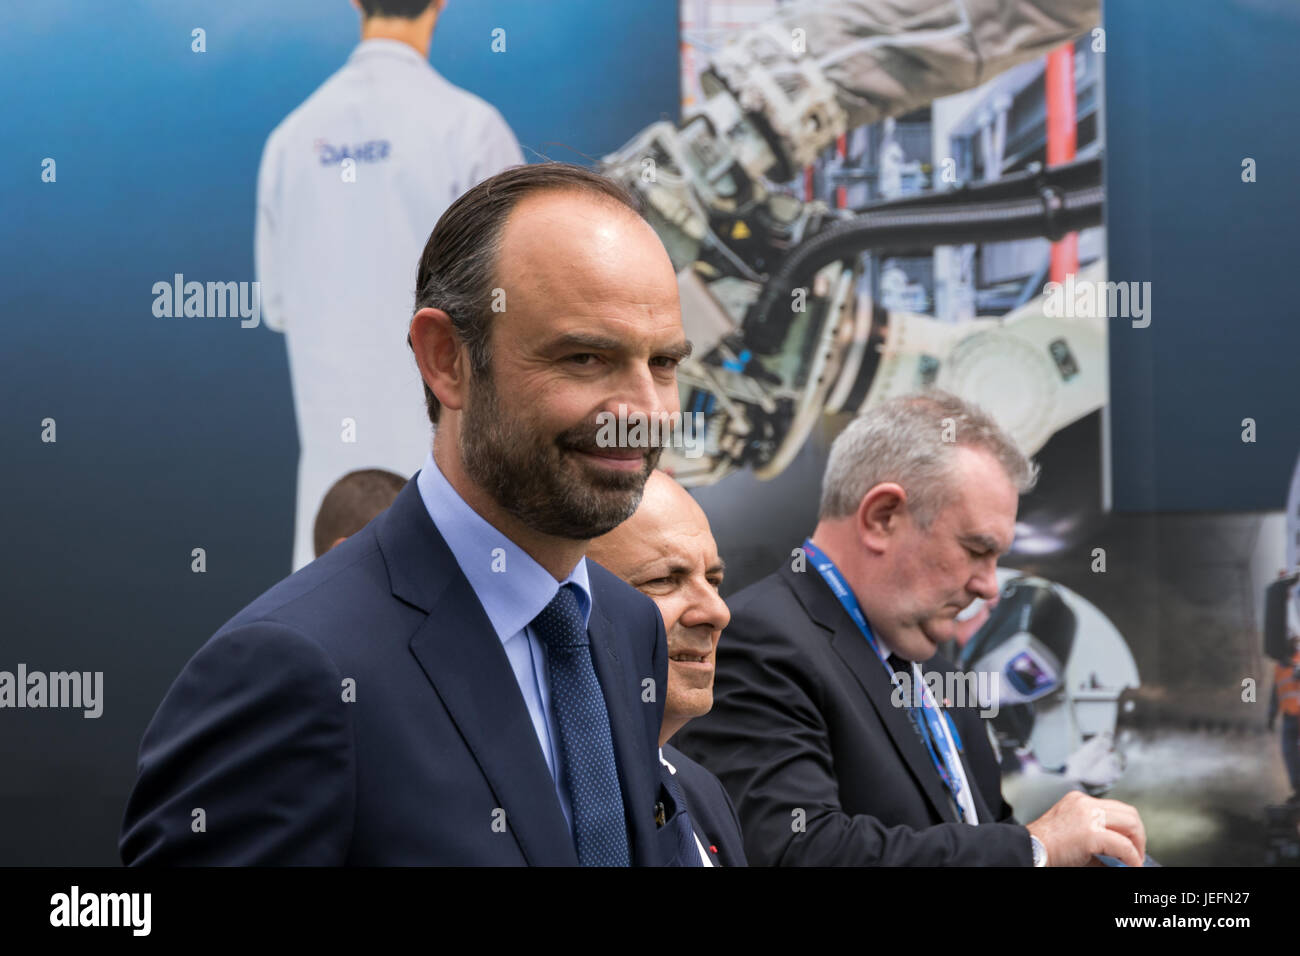 París, Francia - 23 Jun, 2017: El Primer Ministro francés Edouard Philippe visitando diversas compañías aeroespaciales en el Paris Air Show 2017 Foto de stock